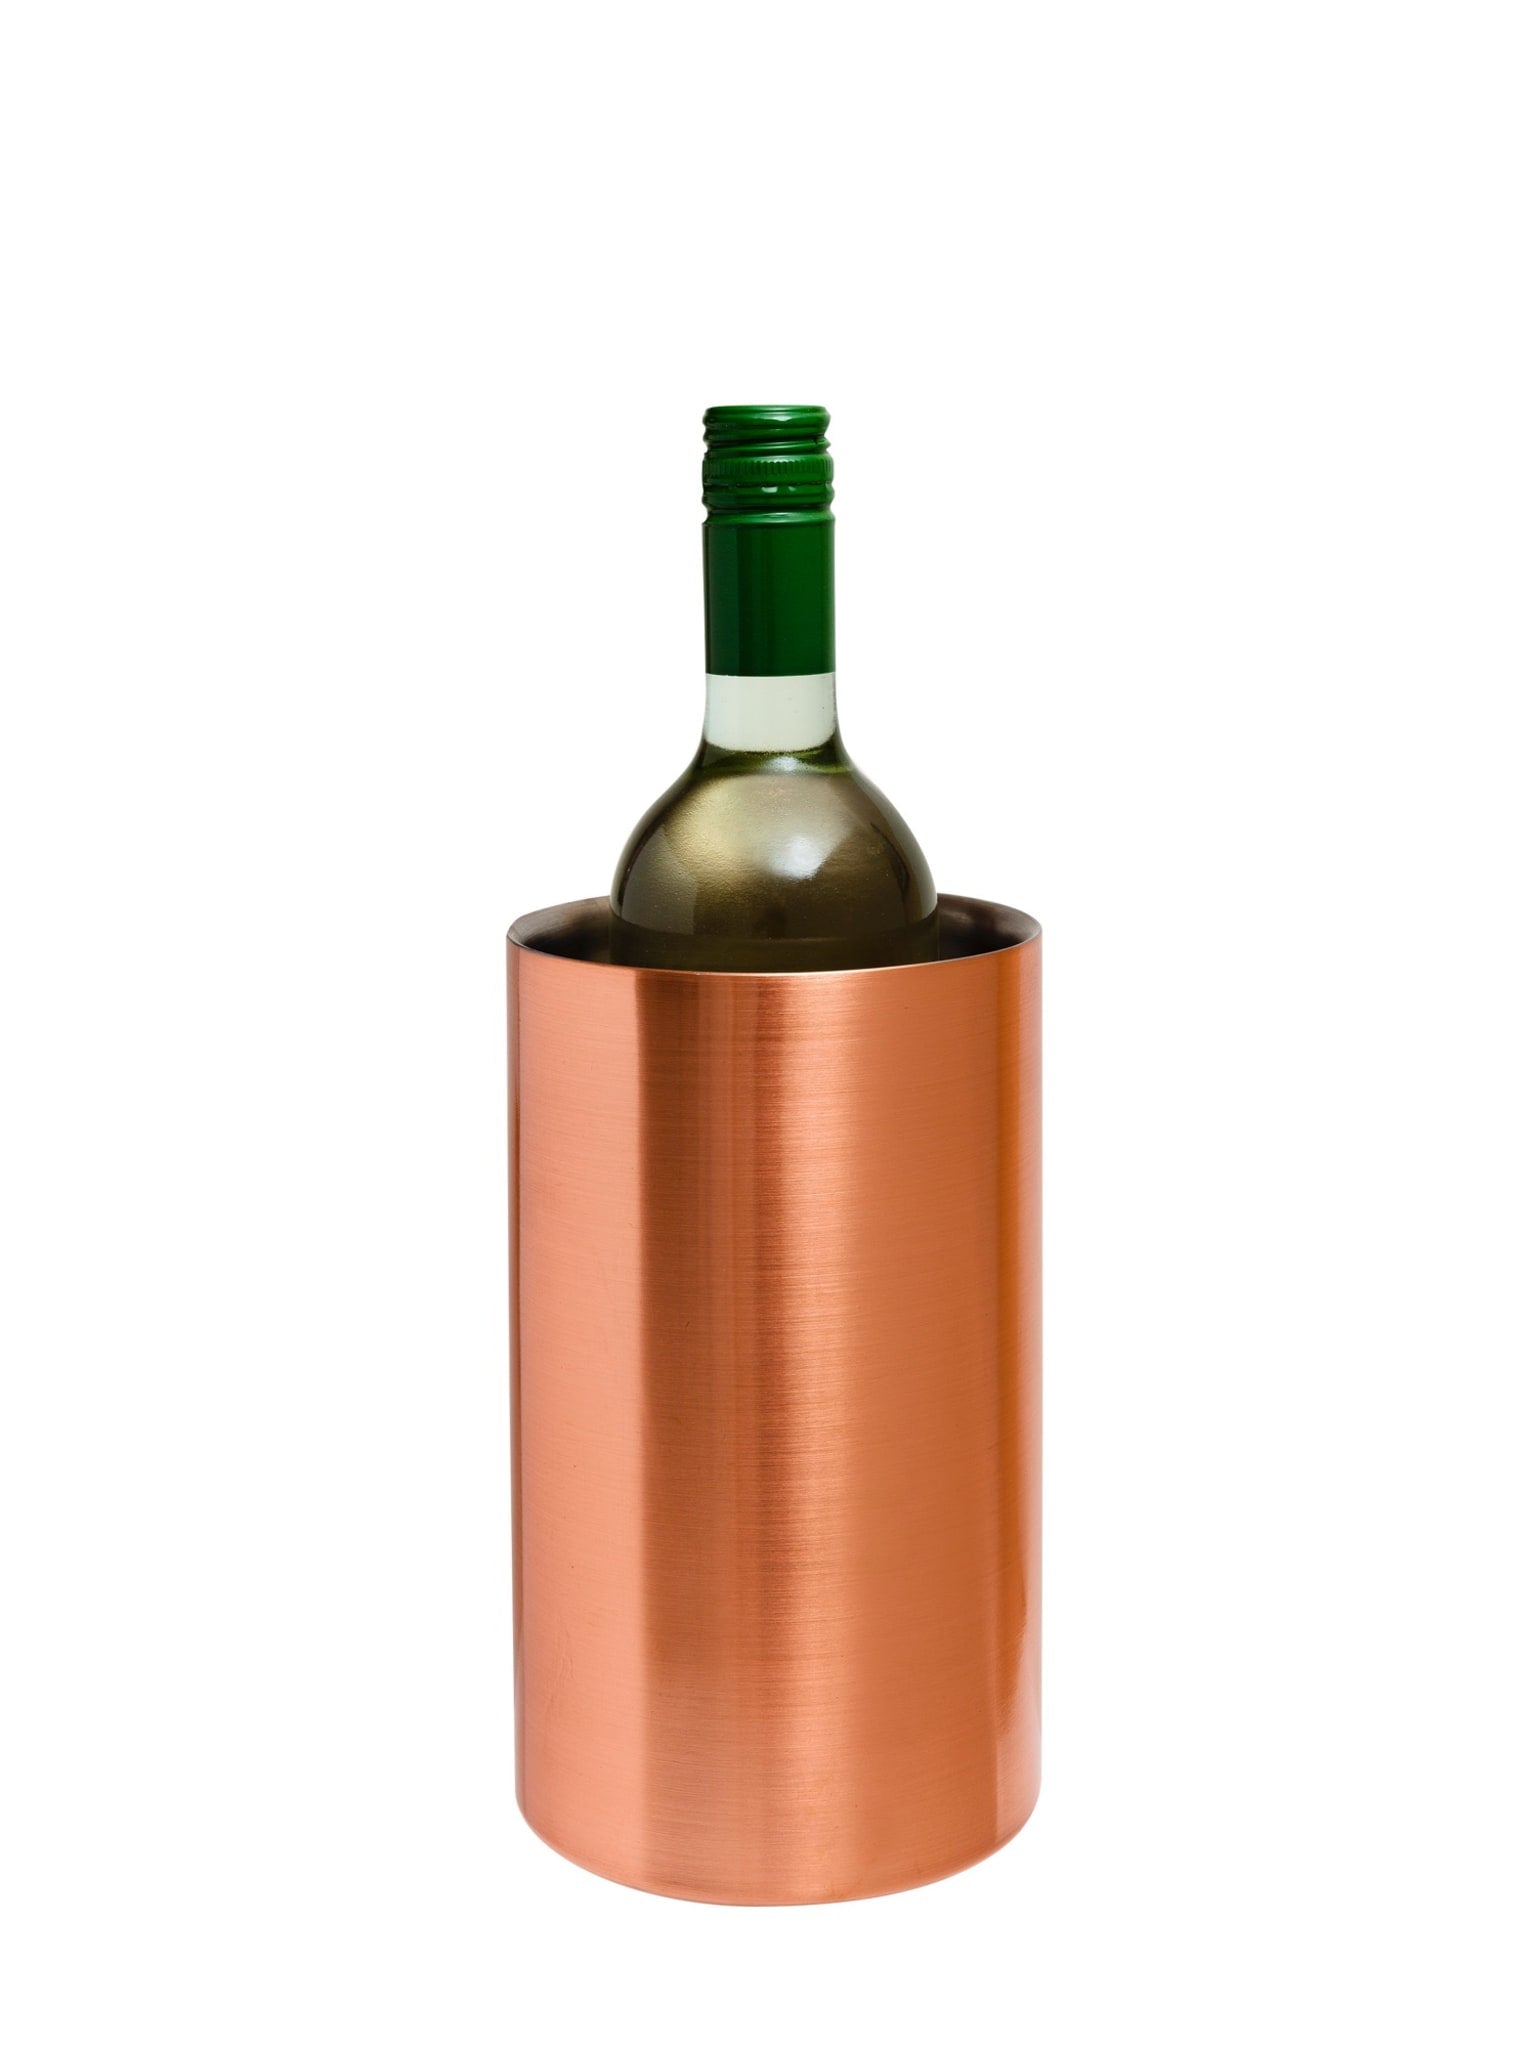 Probieren Sie diesen wunderschönen Weinkühler in Kupfer für eine anspruchsvolle Art, Ihre Weine zu servieren.